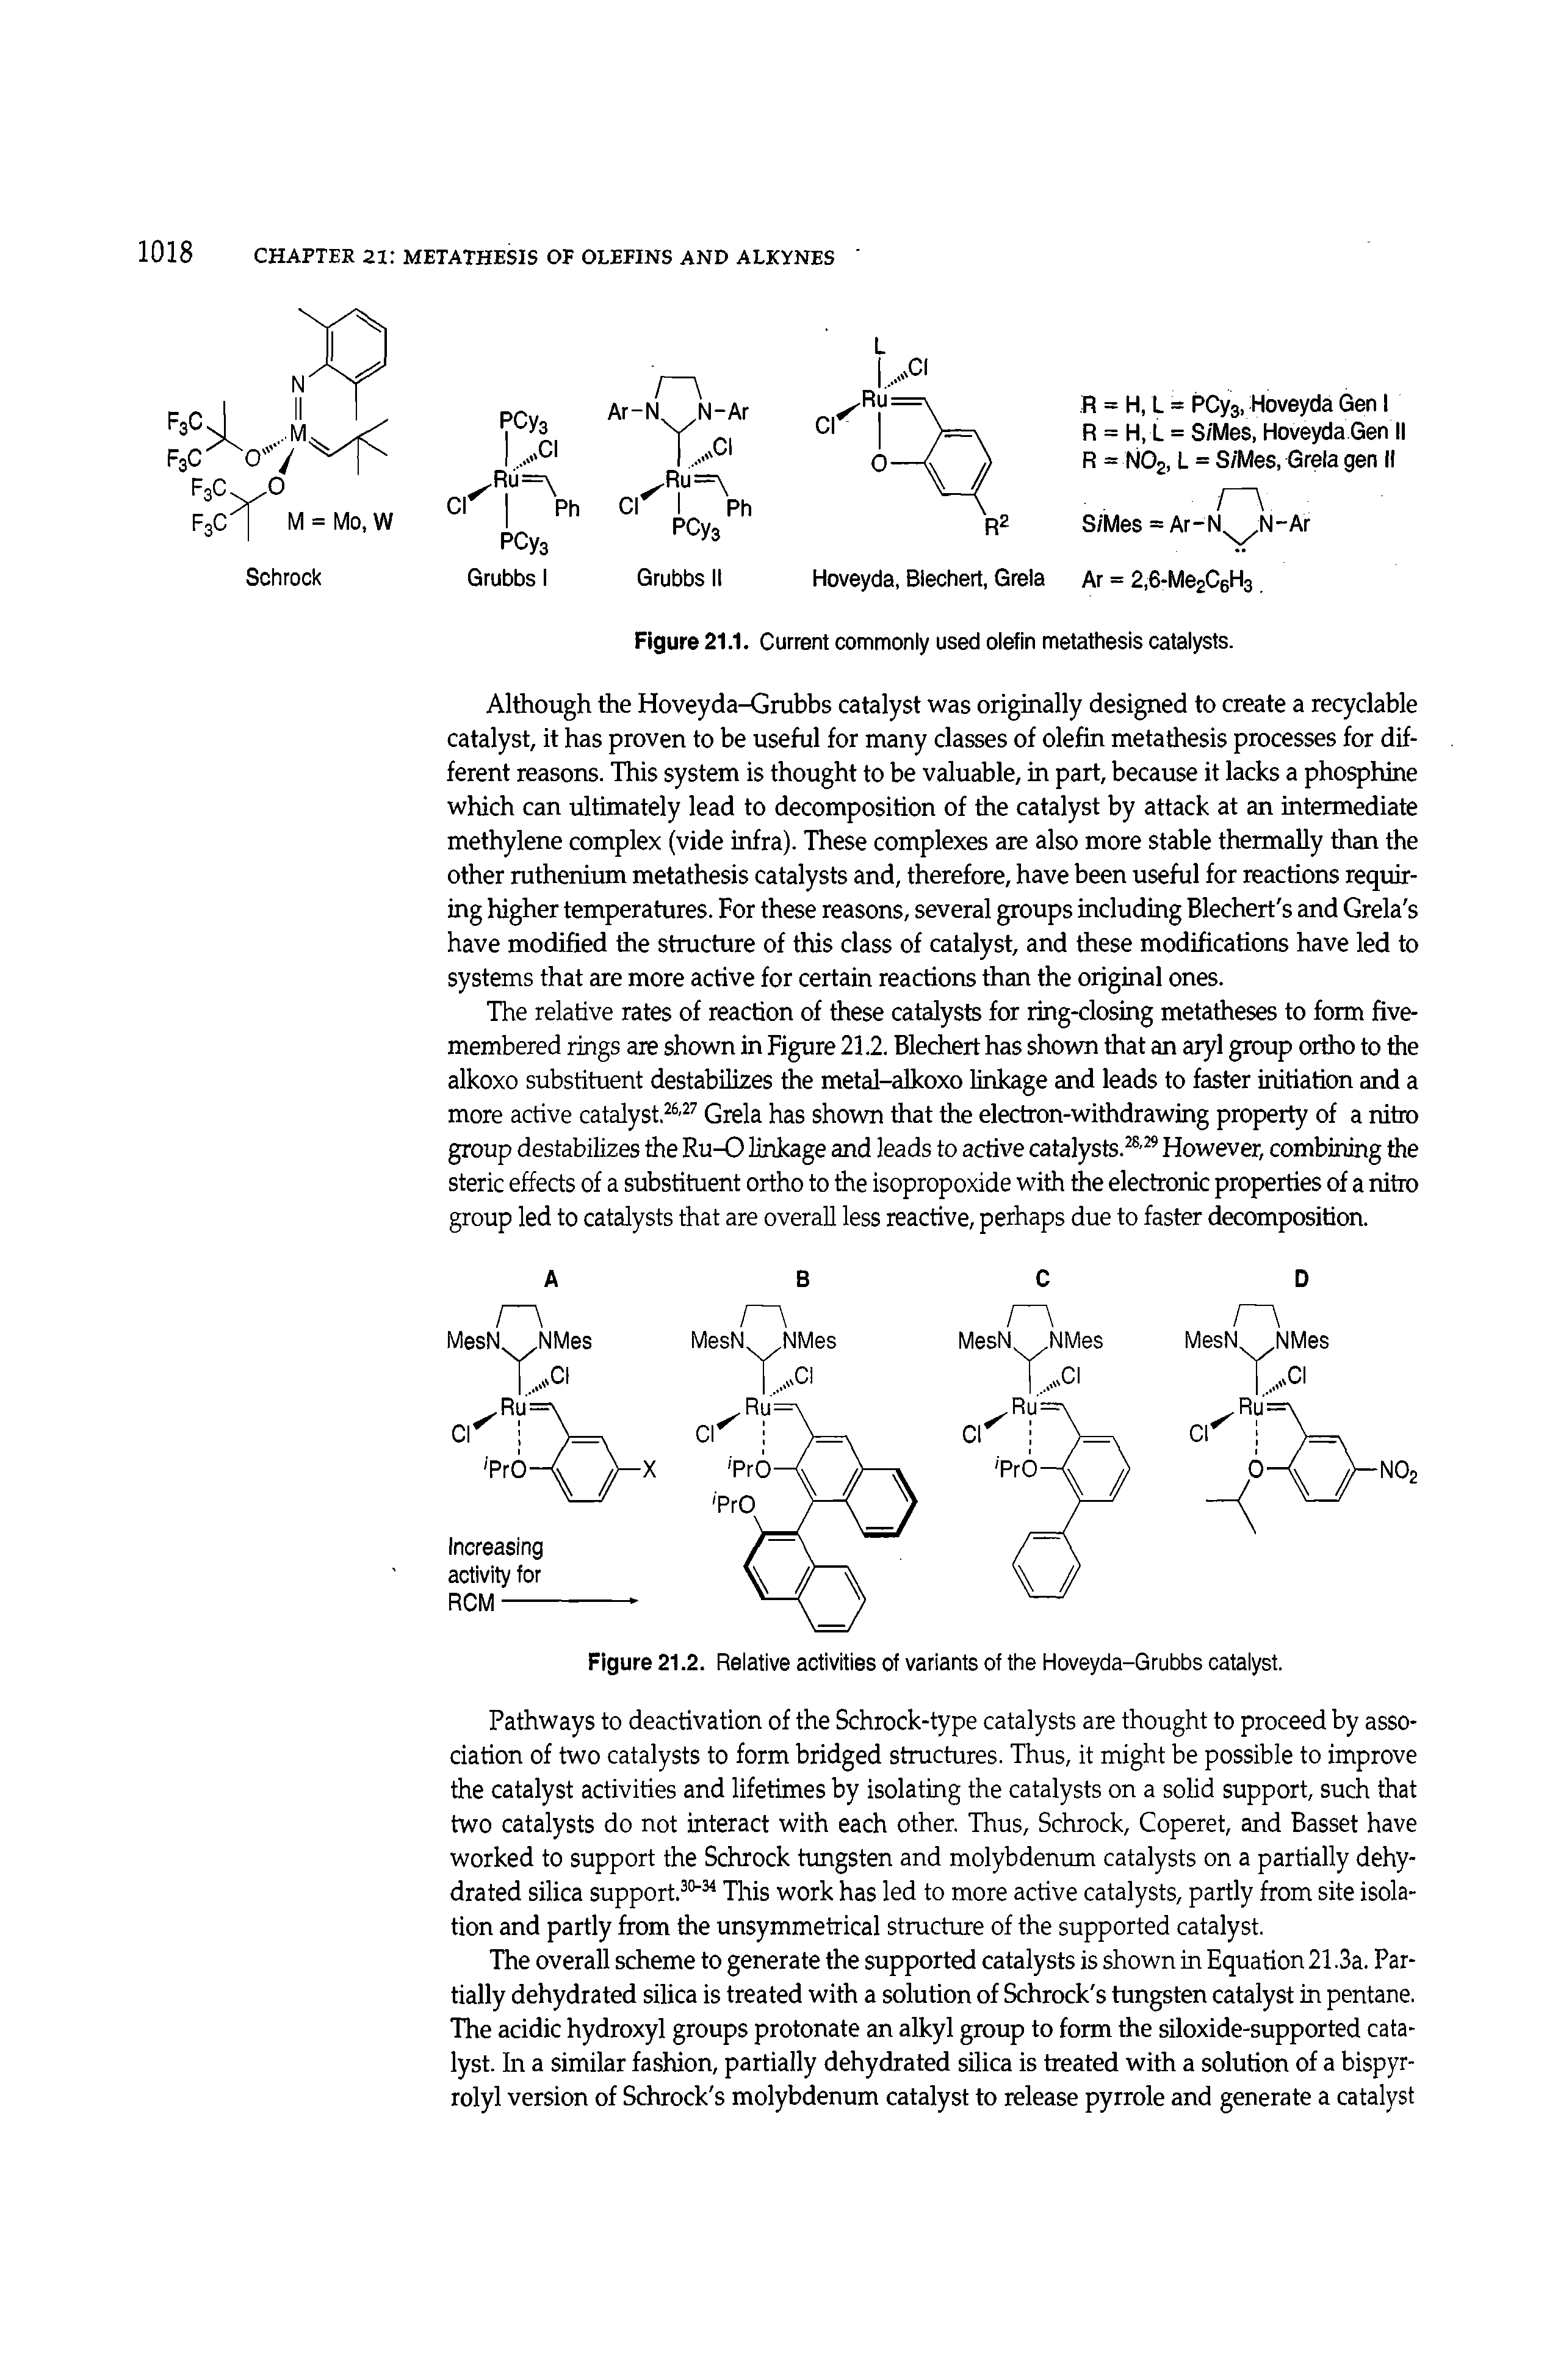 Figure 21.2. Relative activities of variants of the Hoveyda-Grubbs catalyst.